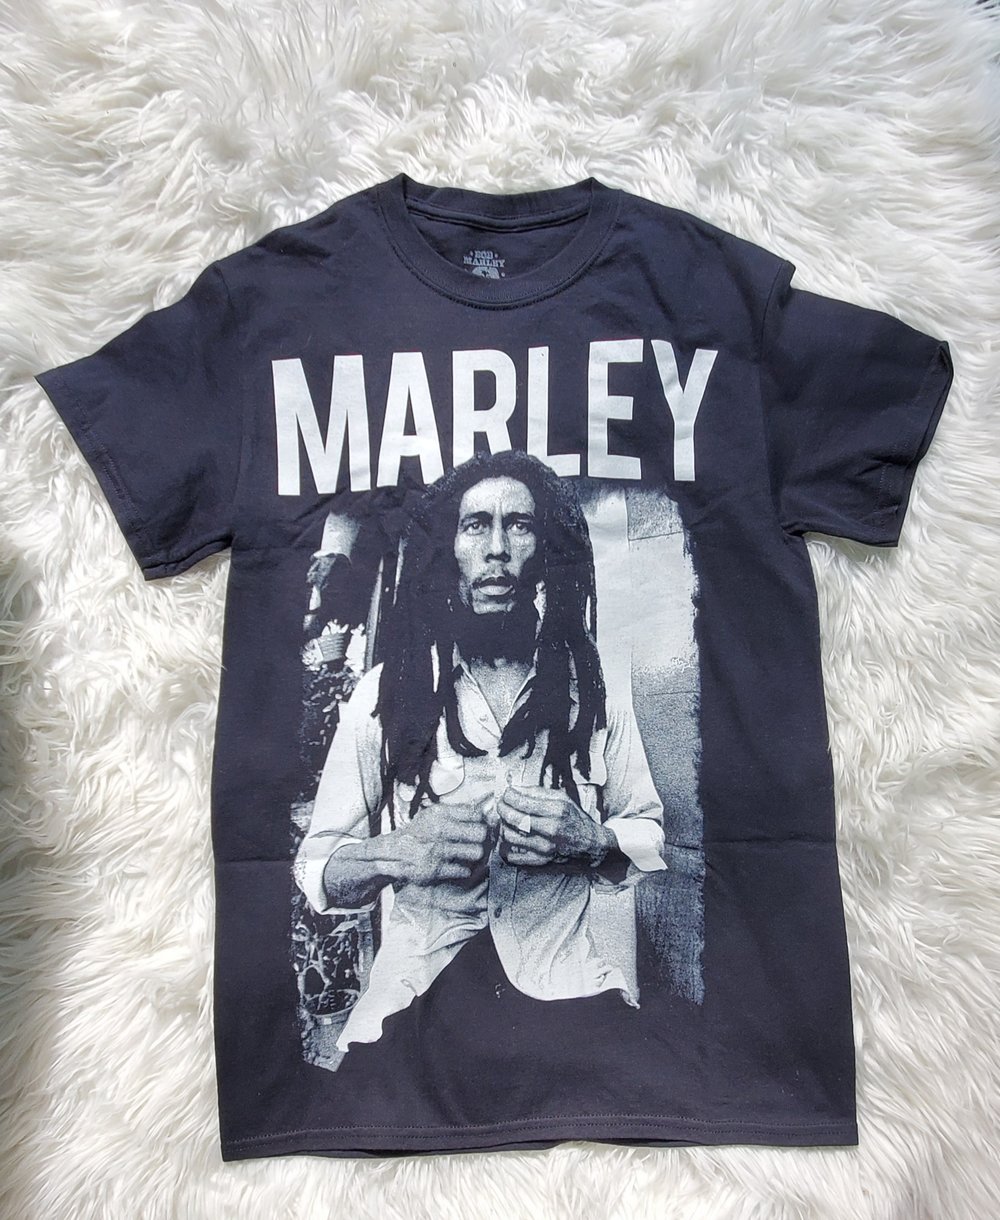 Bob Marley Profile tee